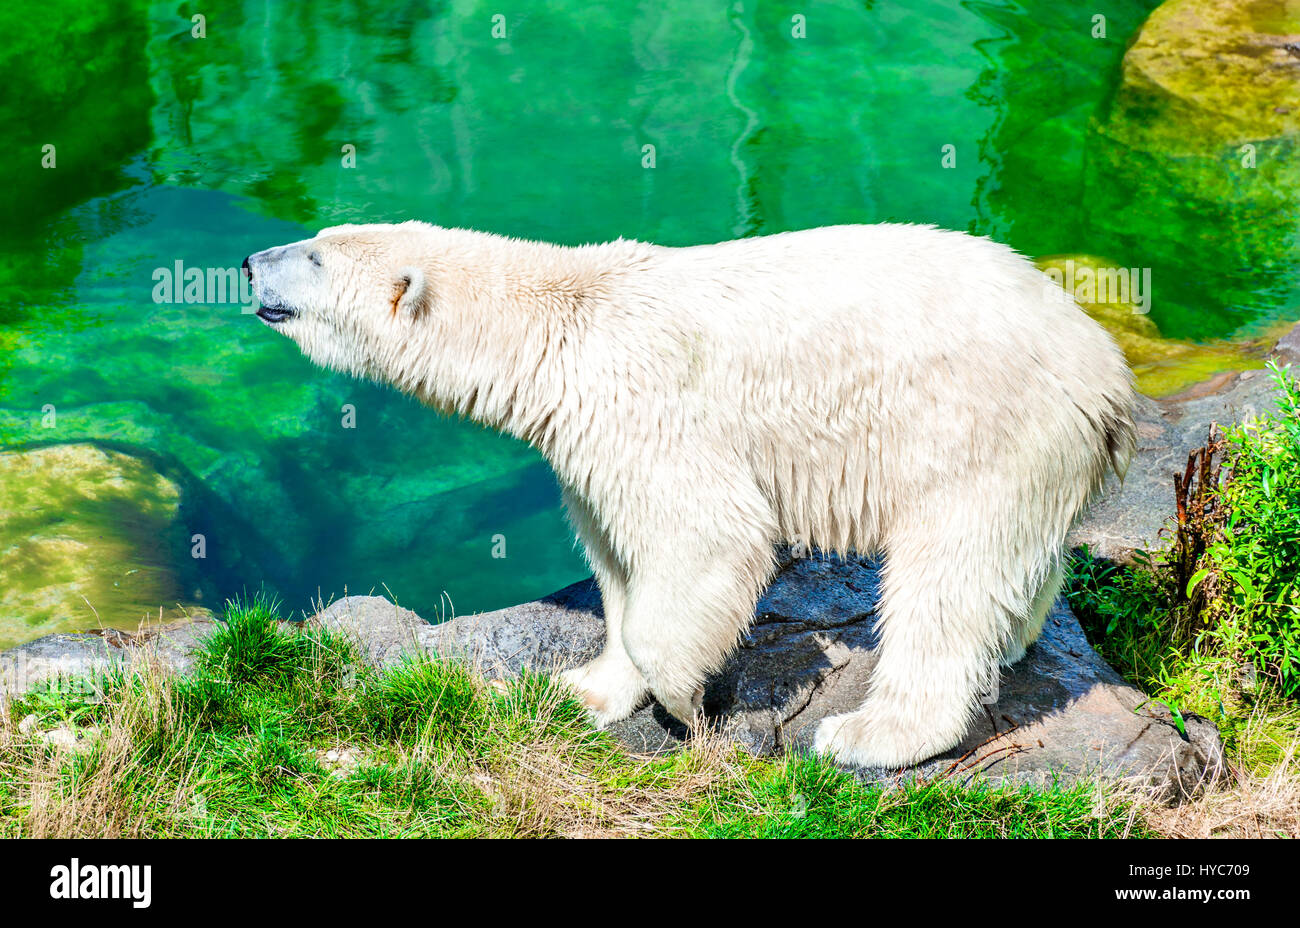 Vienna, Austria. Polar Bear (Ursus maritimus) at Schoenbrunn Tiergarten, zoo garden in Wien. Stock Photo